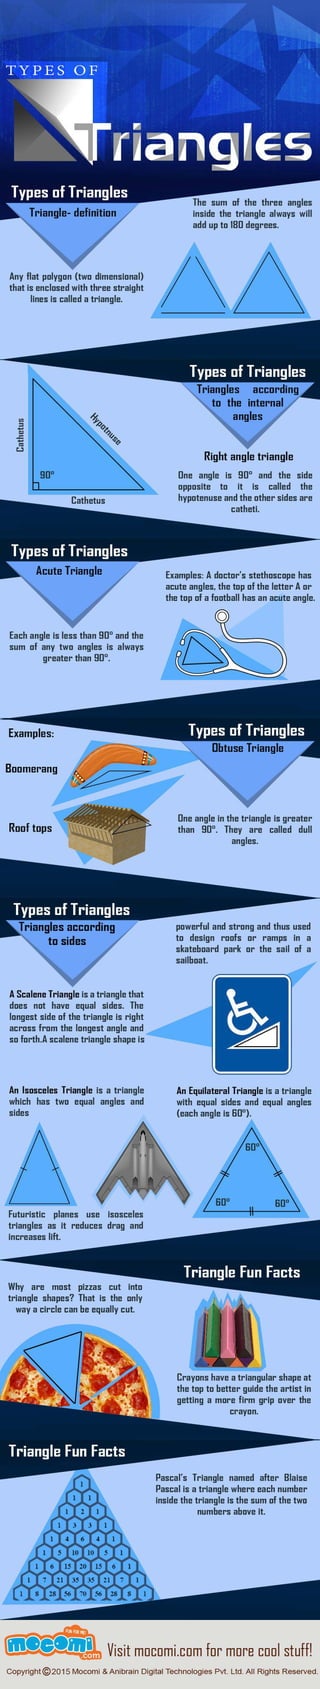 Types of Triangles - Mocomi.com